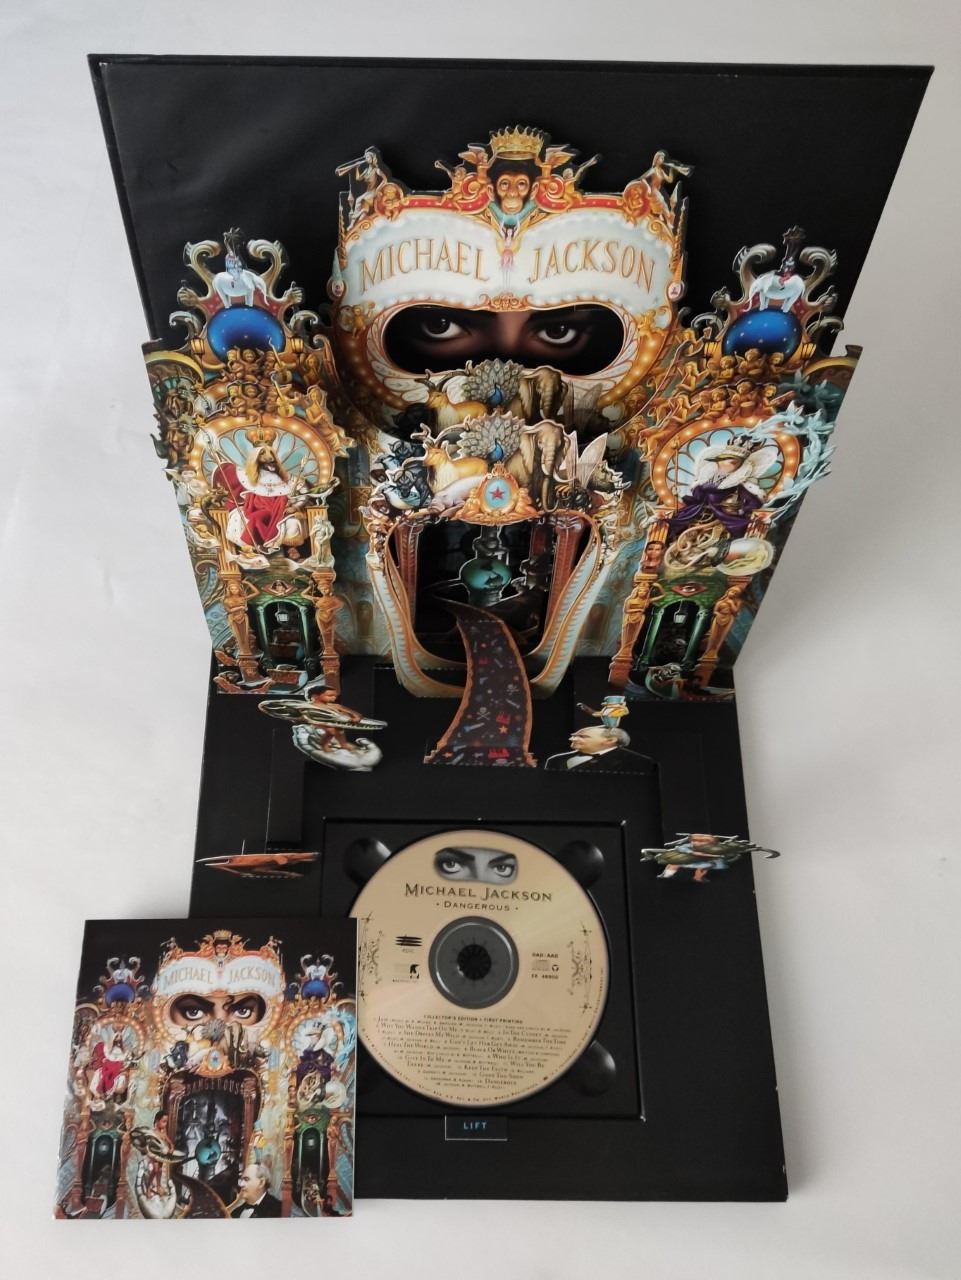 Vintage Michael Jackson limited edition Dangerous 1992 album pop up box: Collectors Edition.